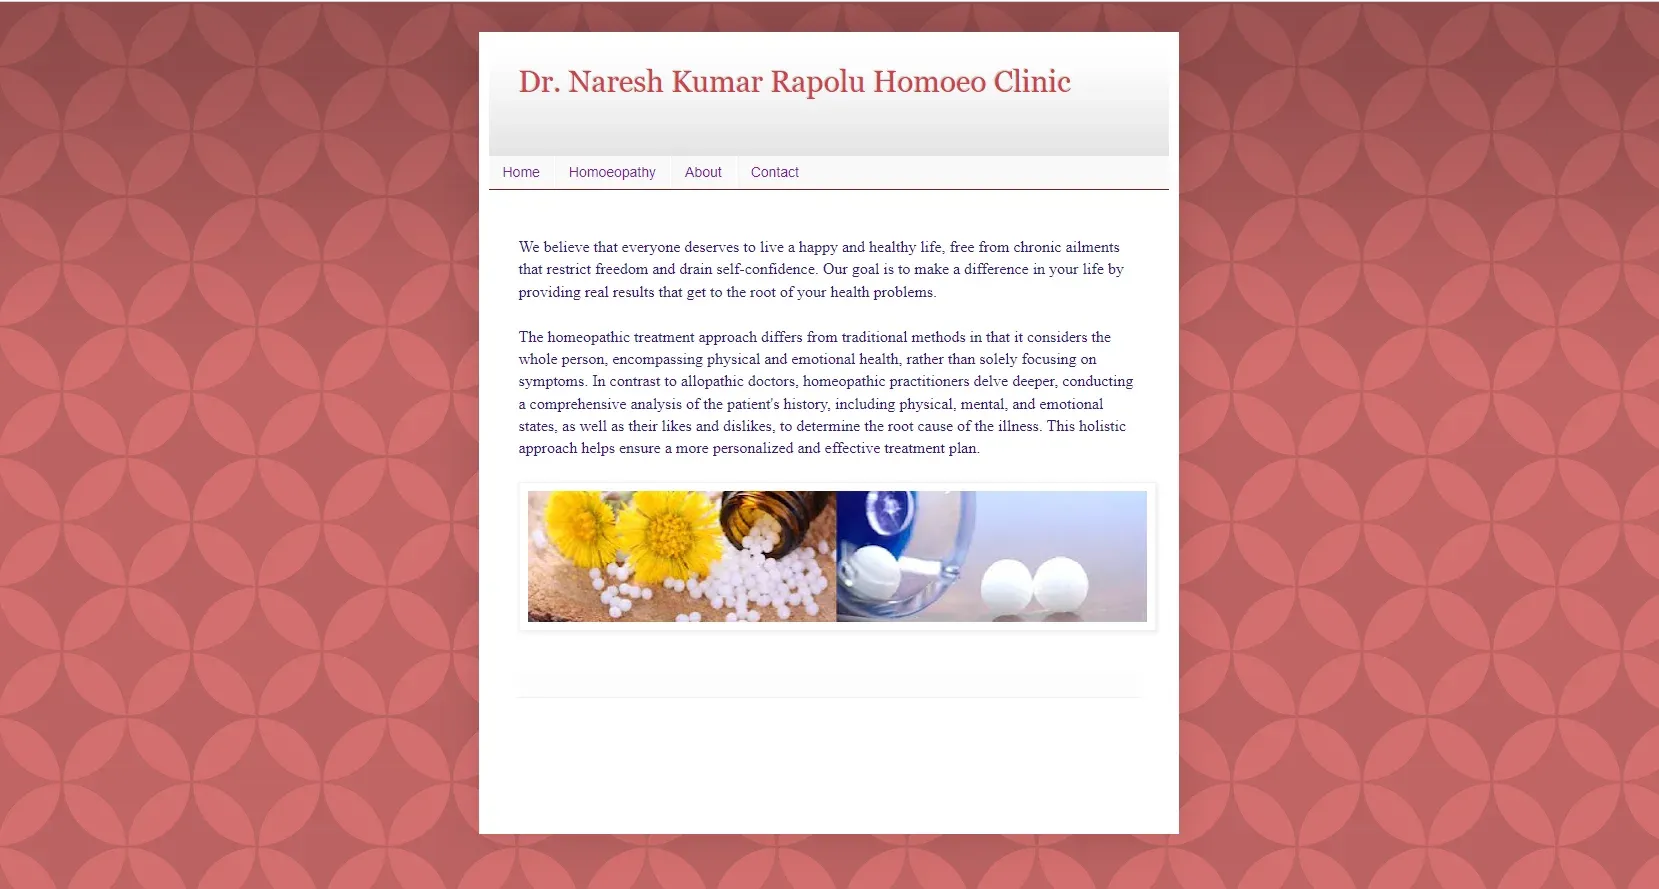 Dr. Naresh Kumar Rapolu Homoeo Clinic, Amritsar